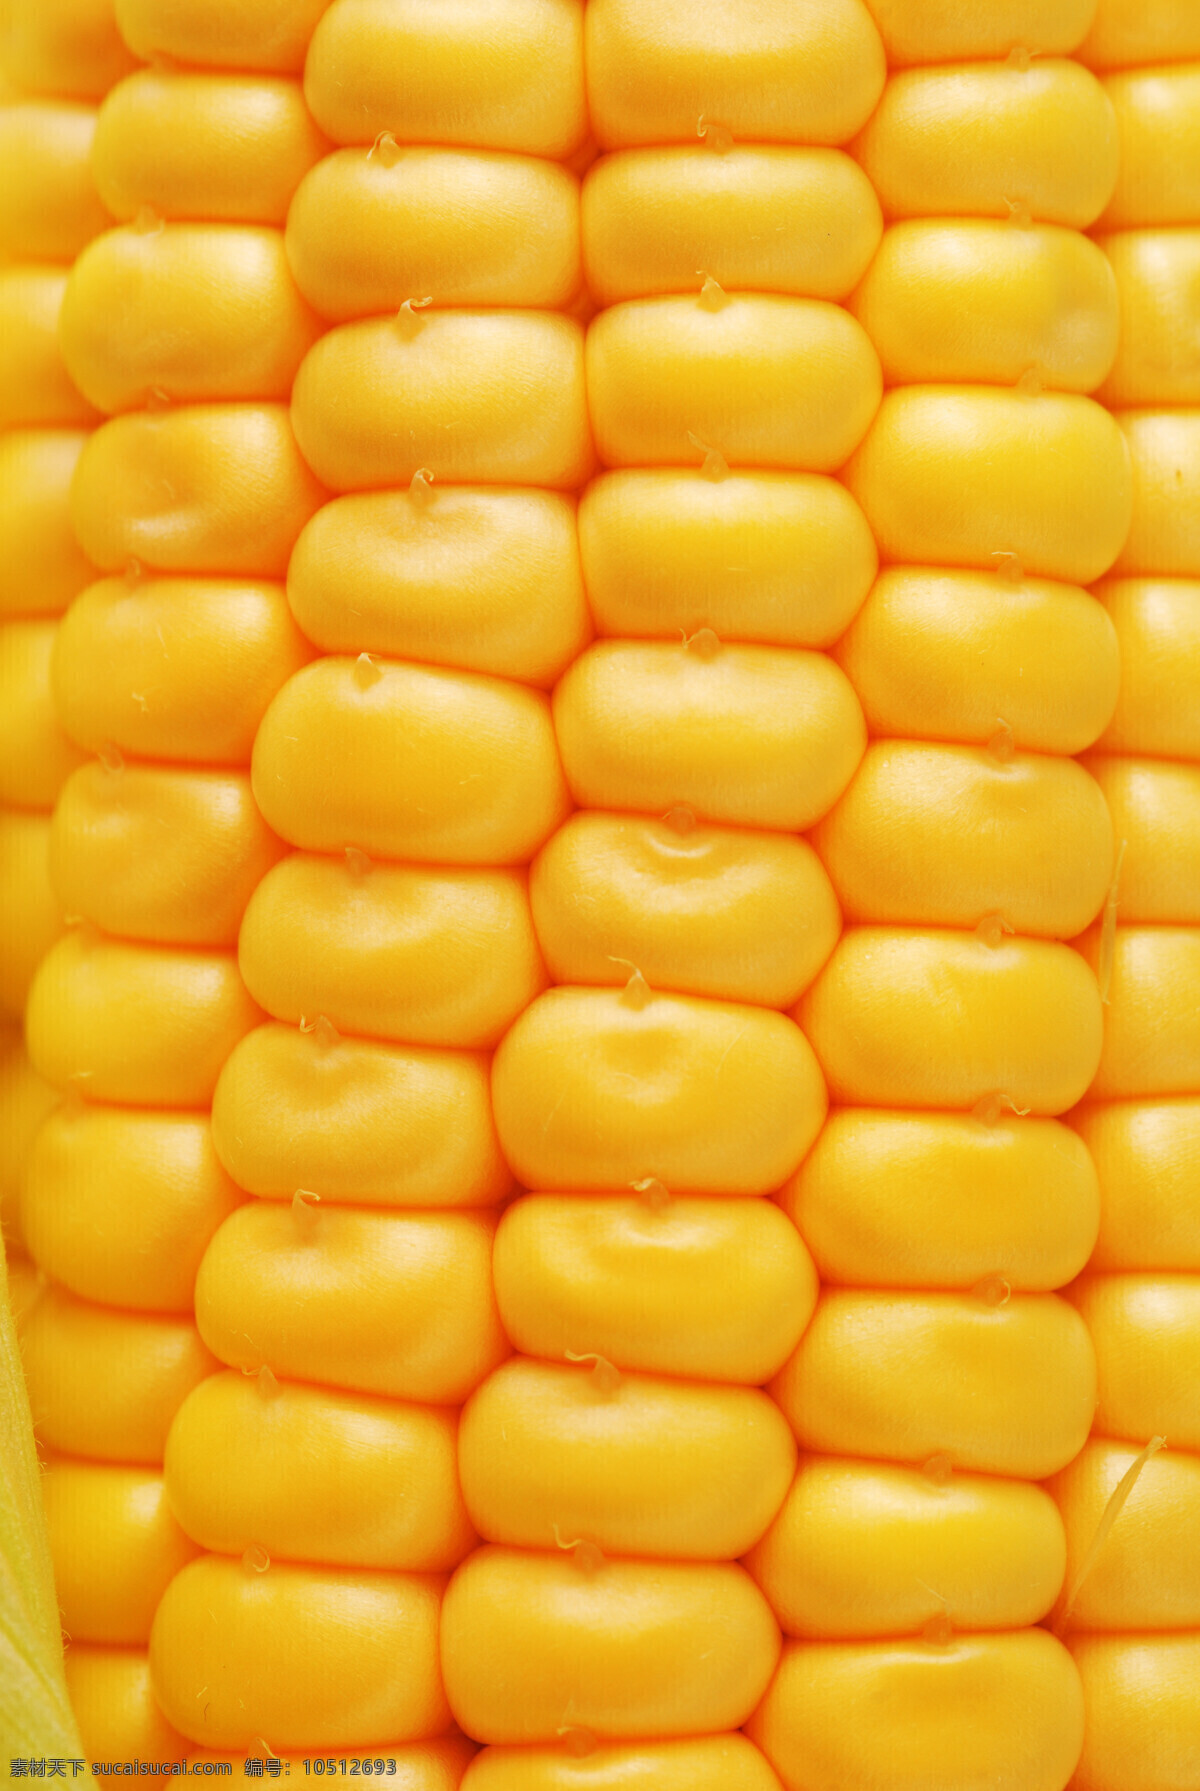 金色 玉米 颗 饱满 金色玉米 包谷 食物 食品 玉米棒 粮食 农产品 食材 食物原料 食材原料 玉米穗 玉米粒 农作物 特写 丰收 颗粒 农业生产 现代科技